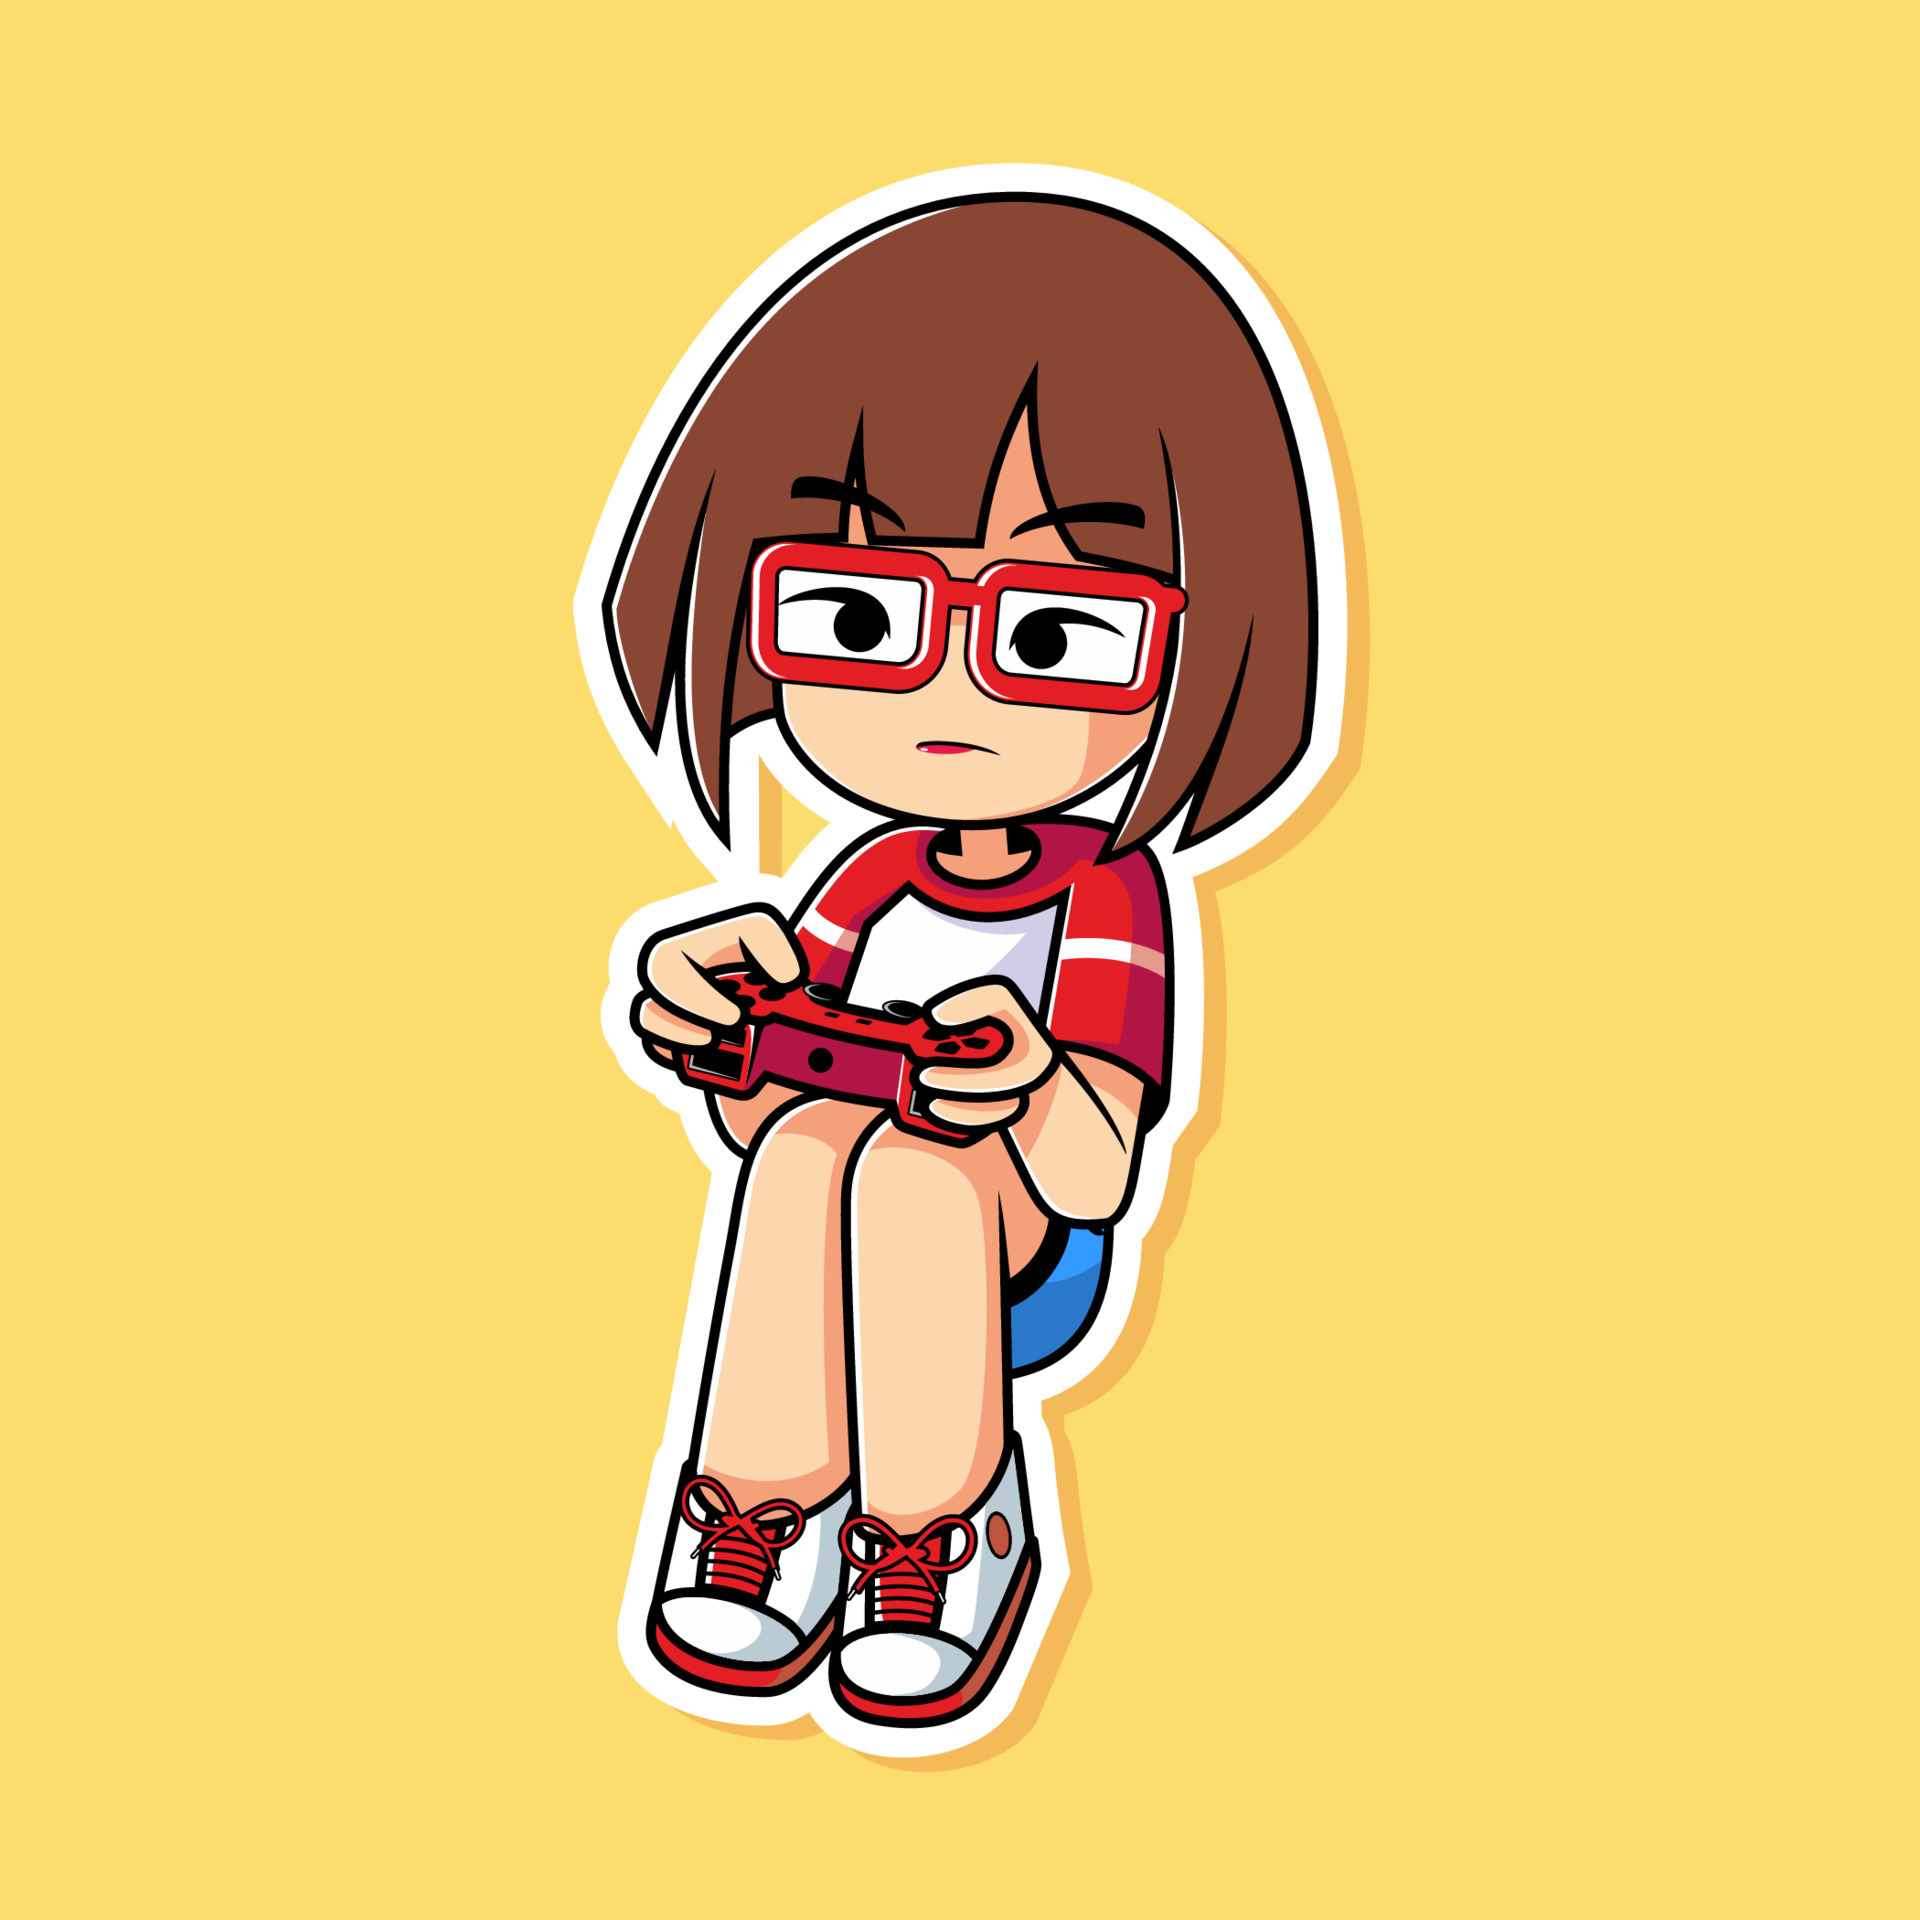 Kawaii Colorful Anime Gamer Girl holding Playing Video Games